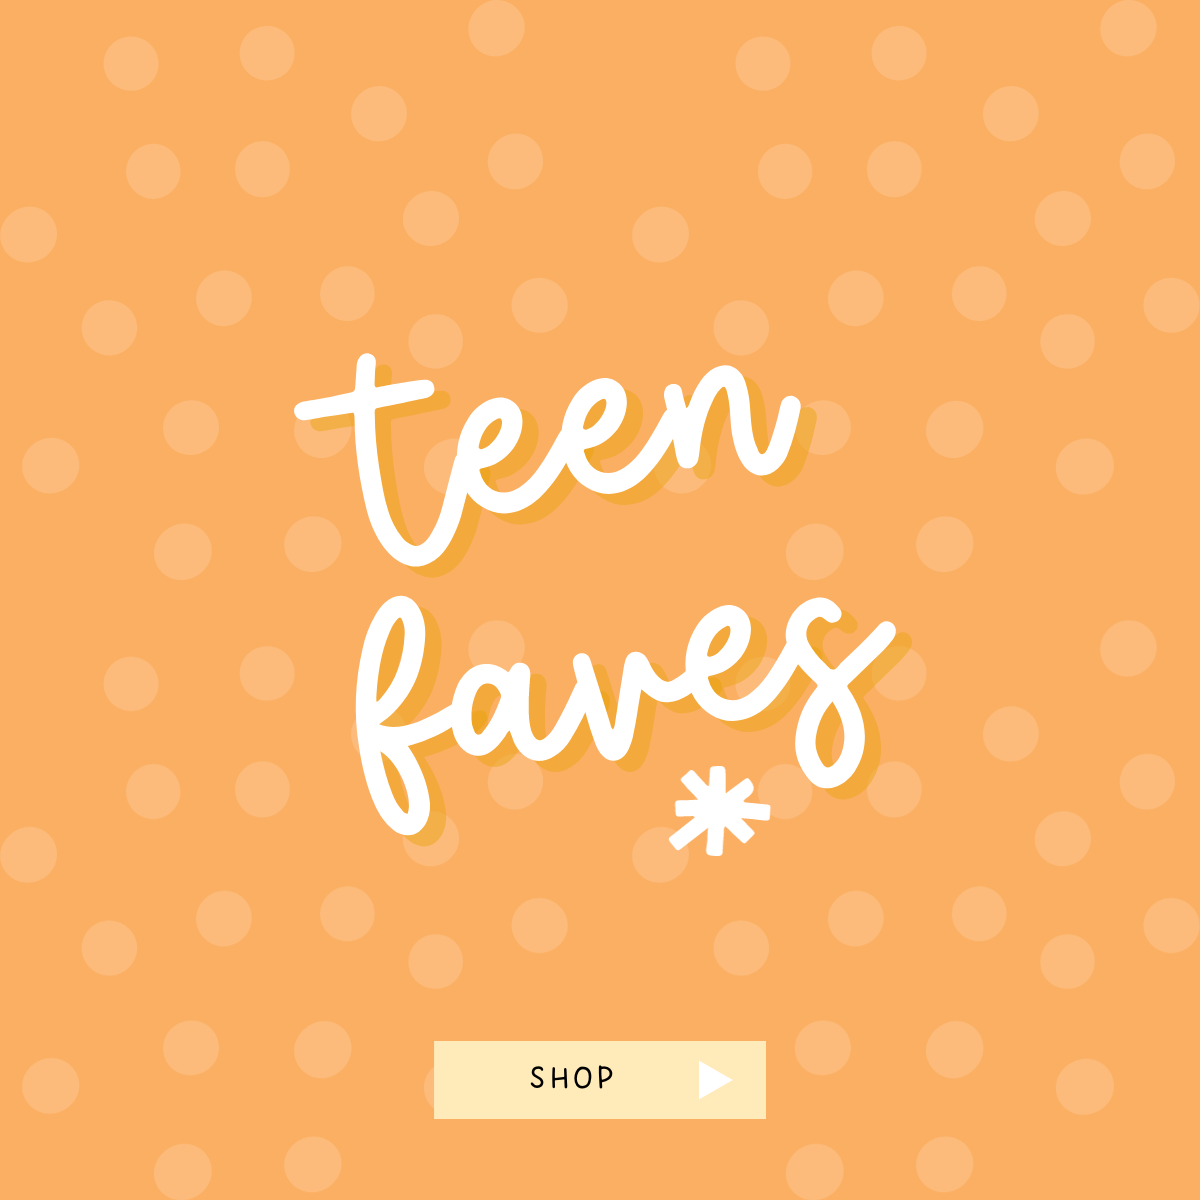 Teen Favs